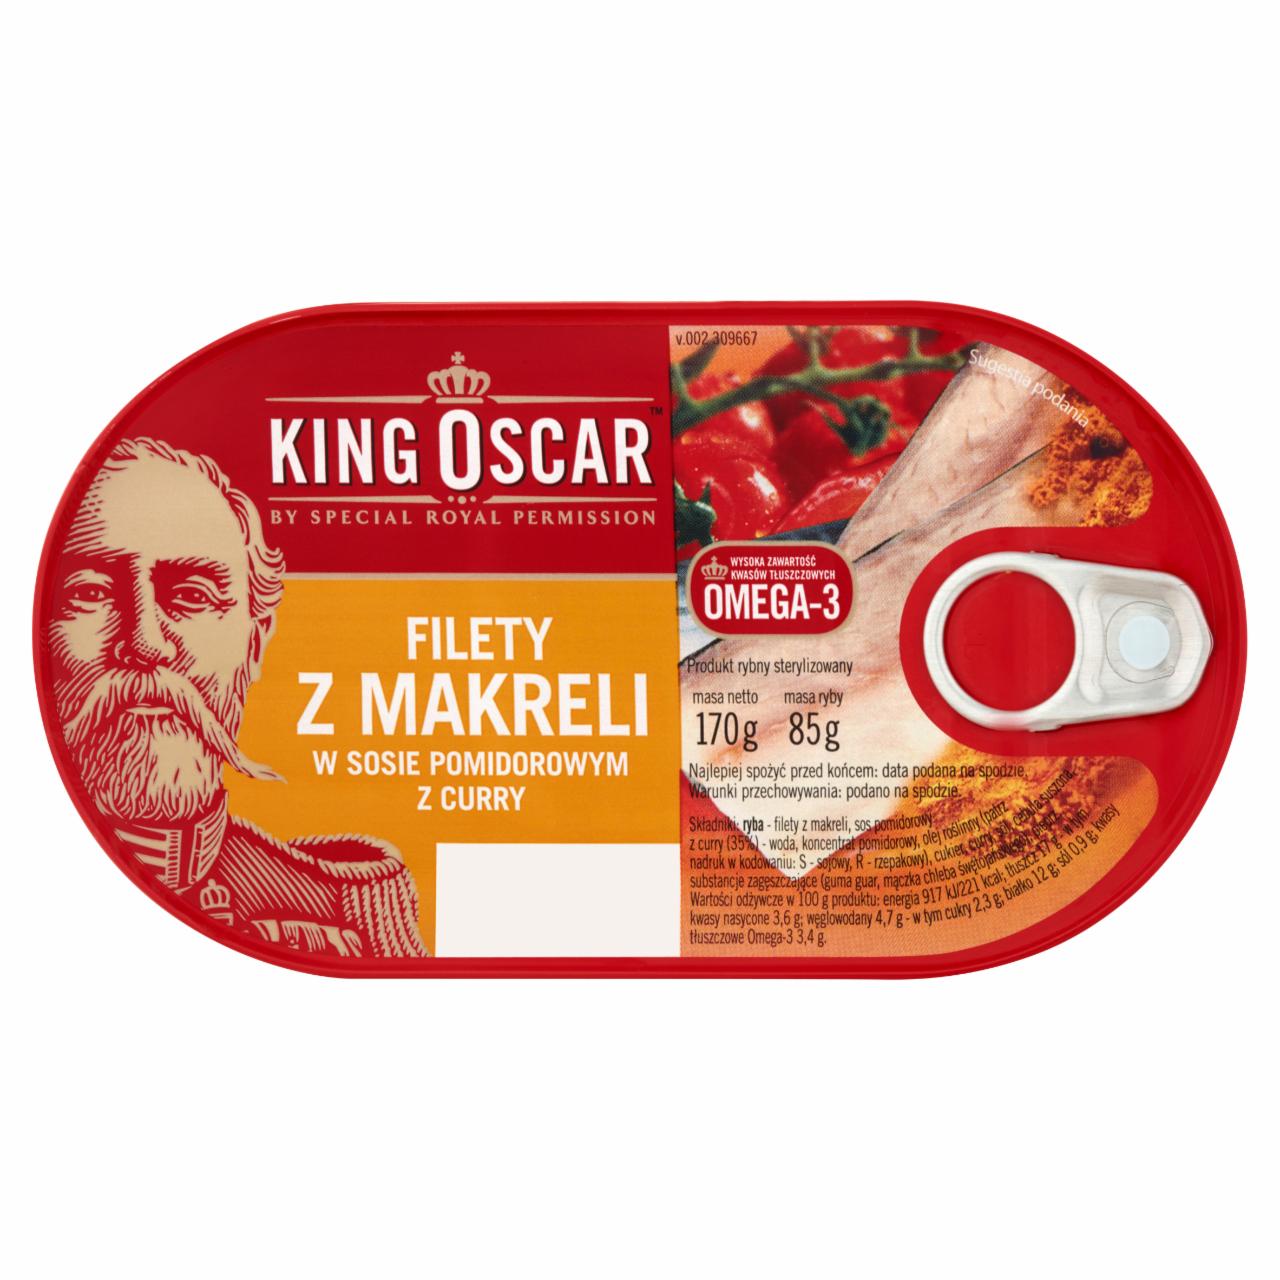 Zdjęcia - King Oscar Filety z makreli w sosie pomidorowym z curry 170 g